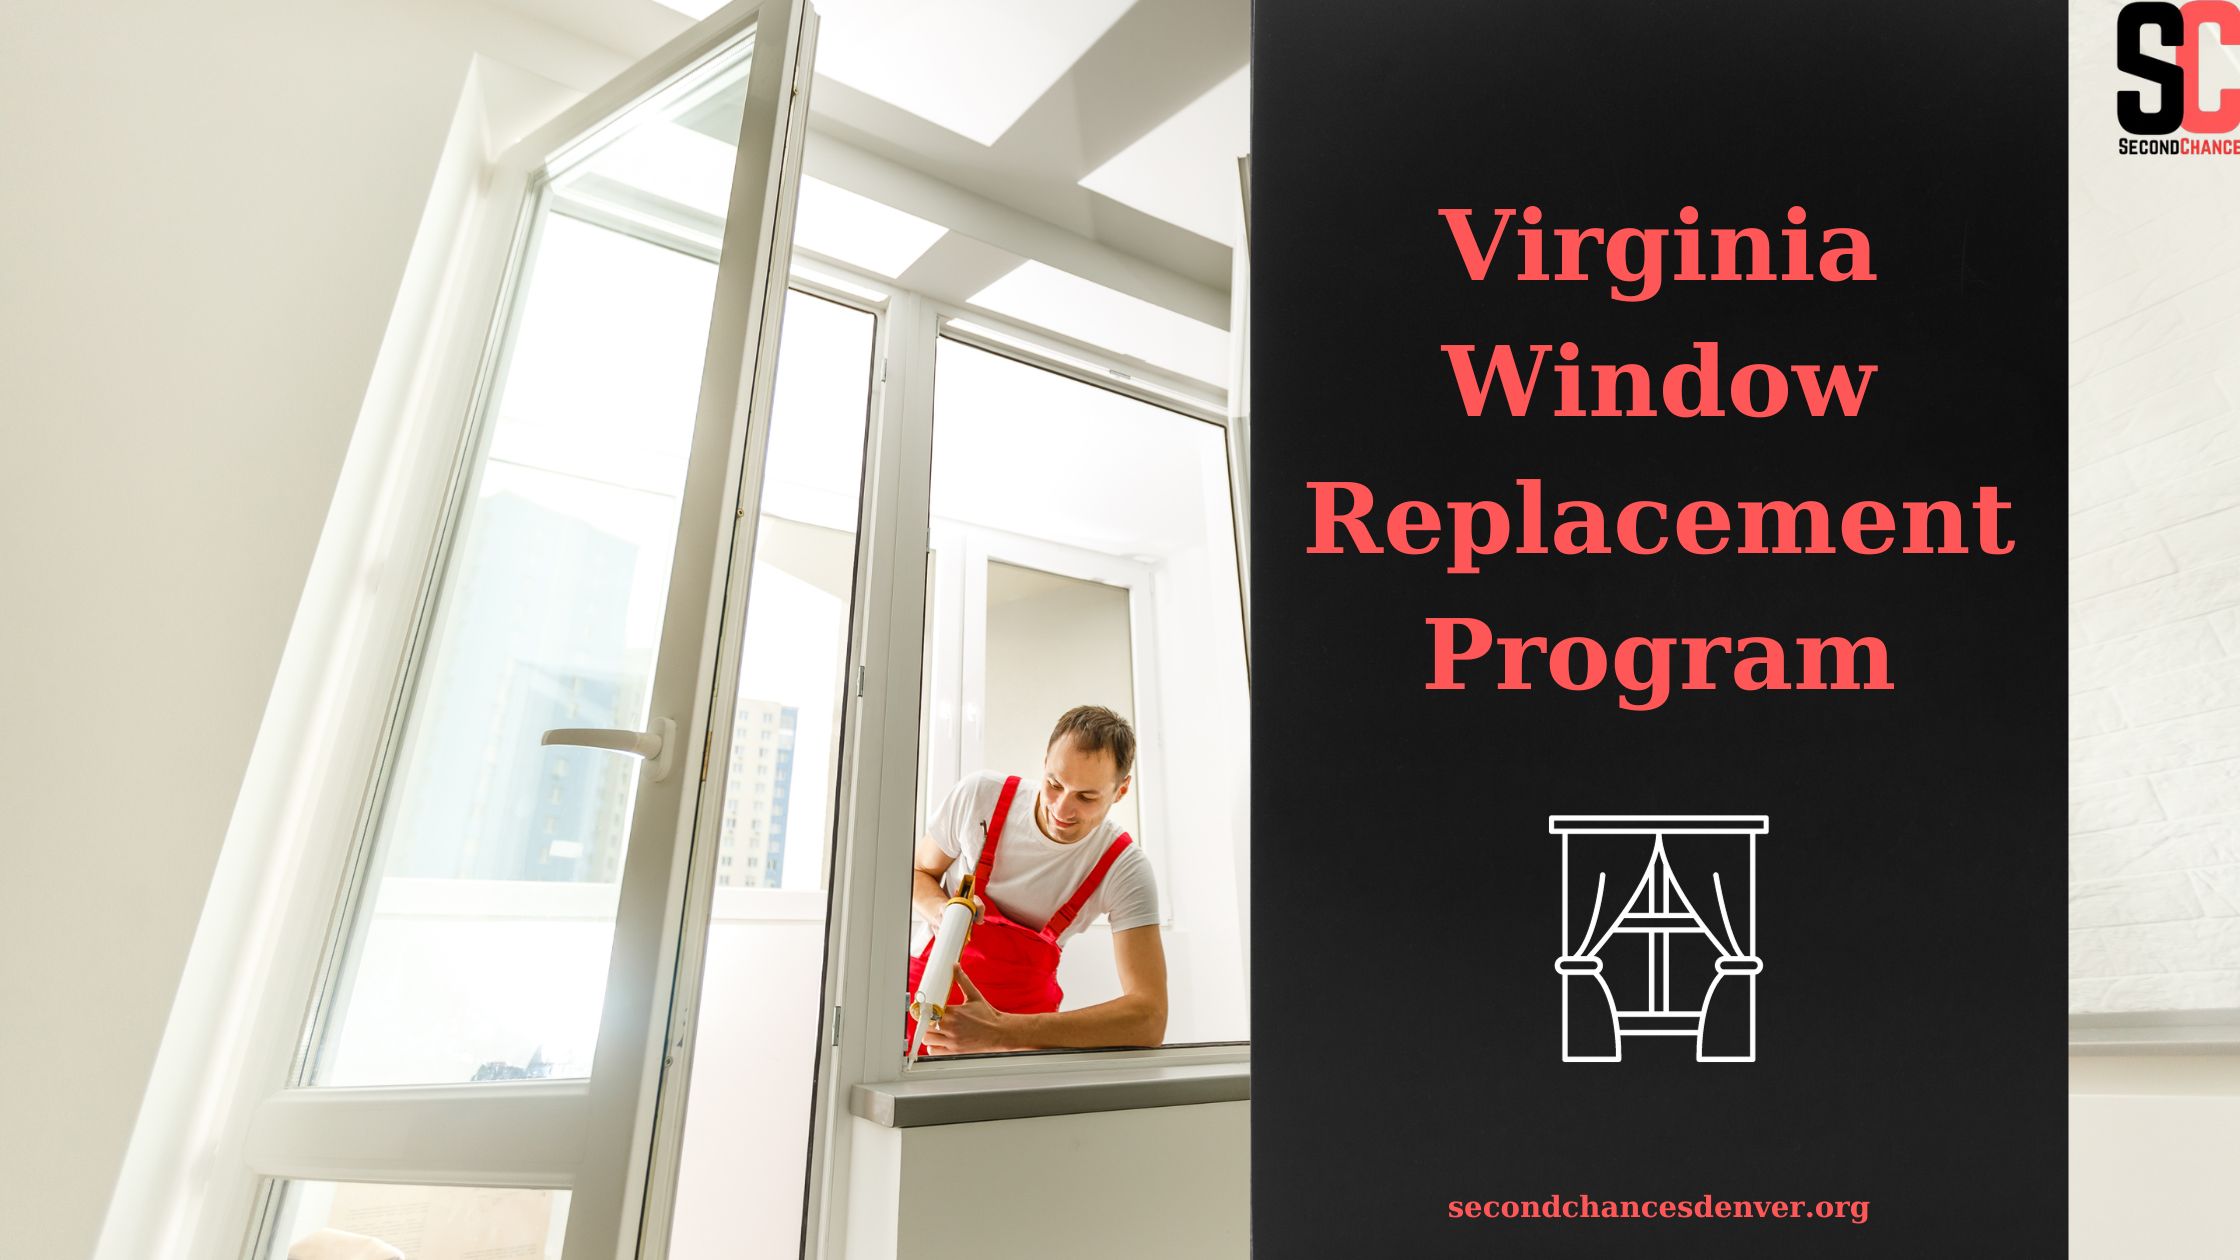 Virginia Window Replacement Program